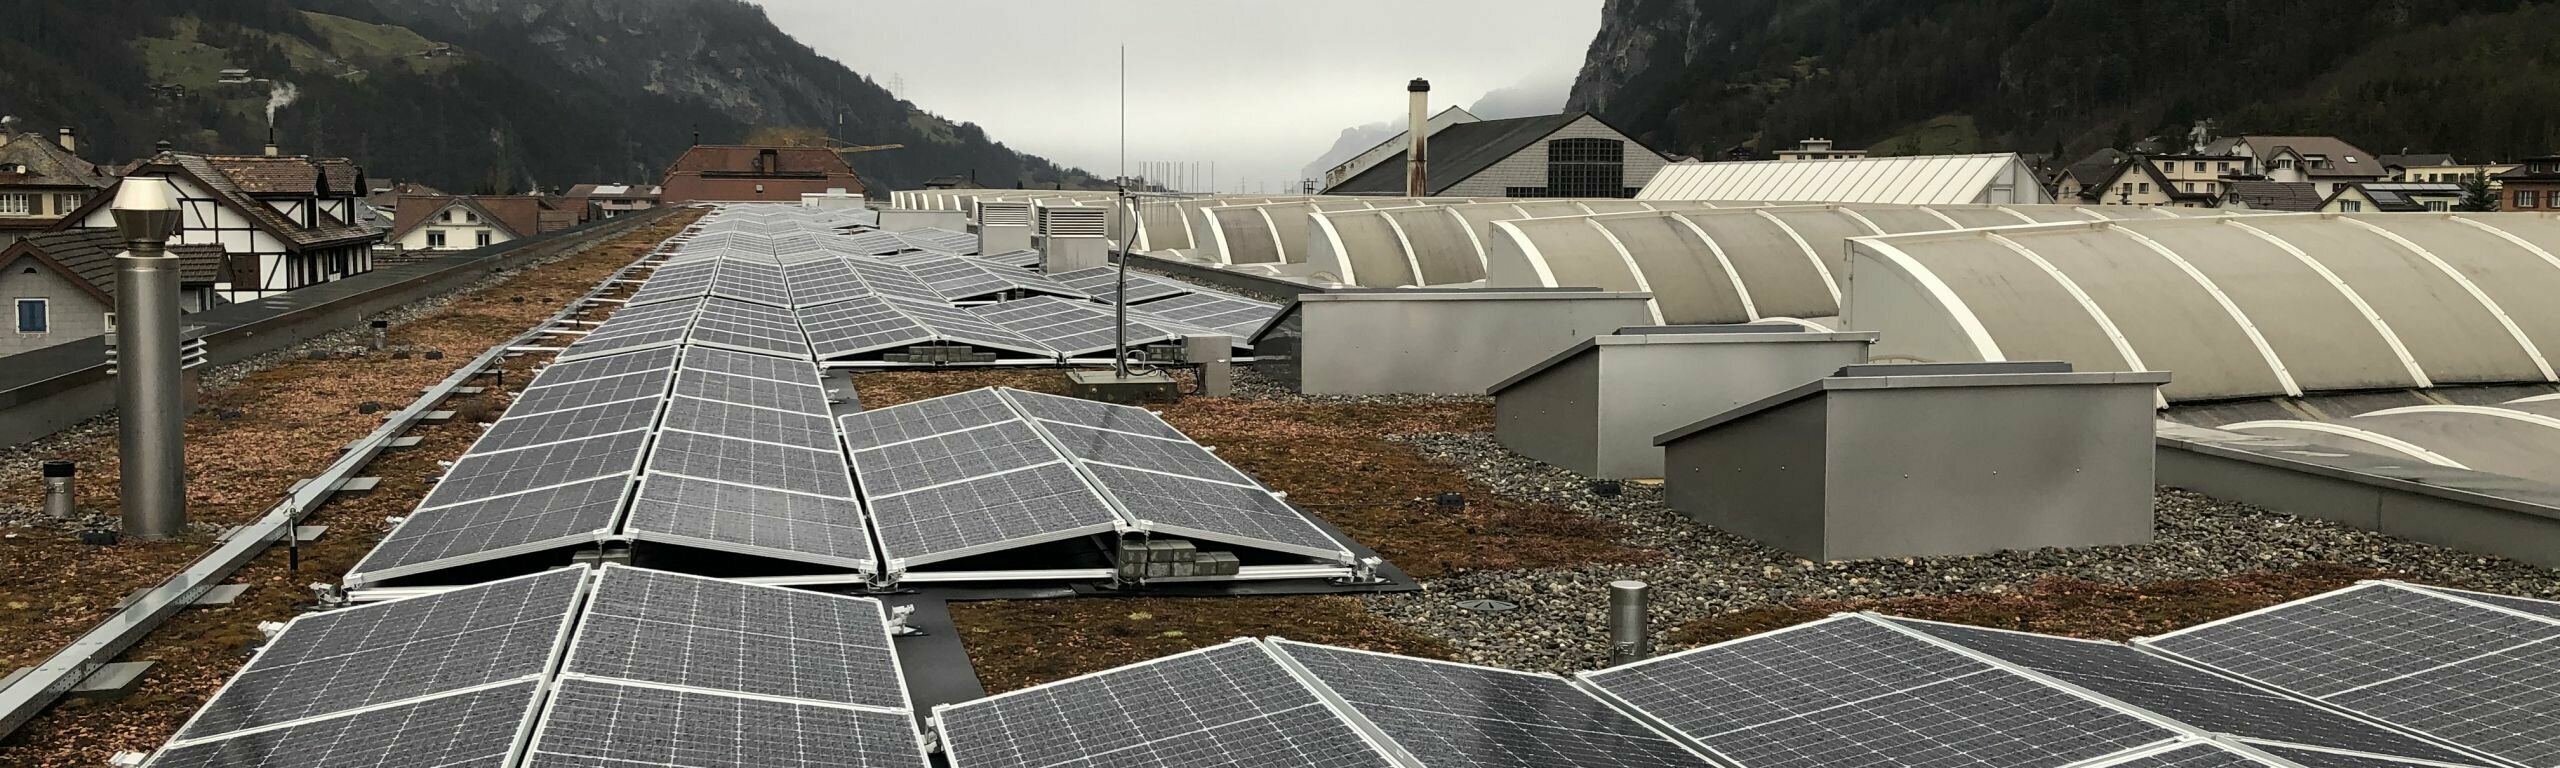 Solaranlagen auf Dächern der SBB